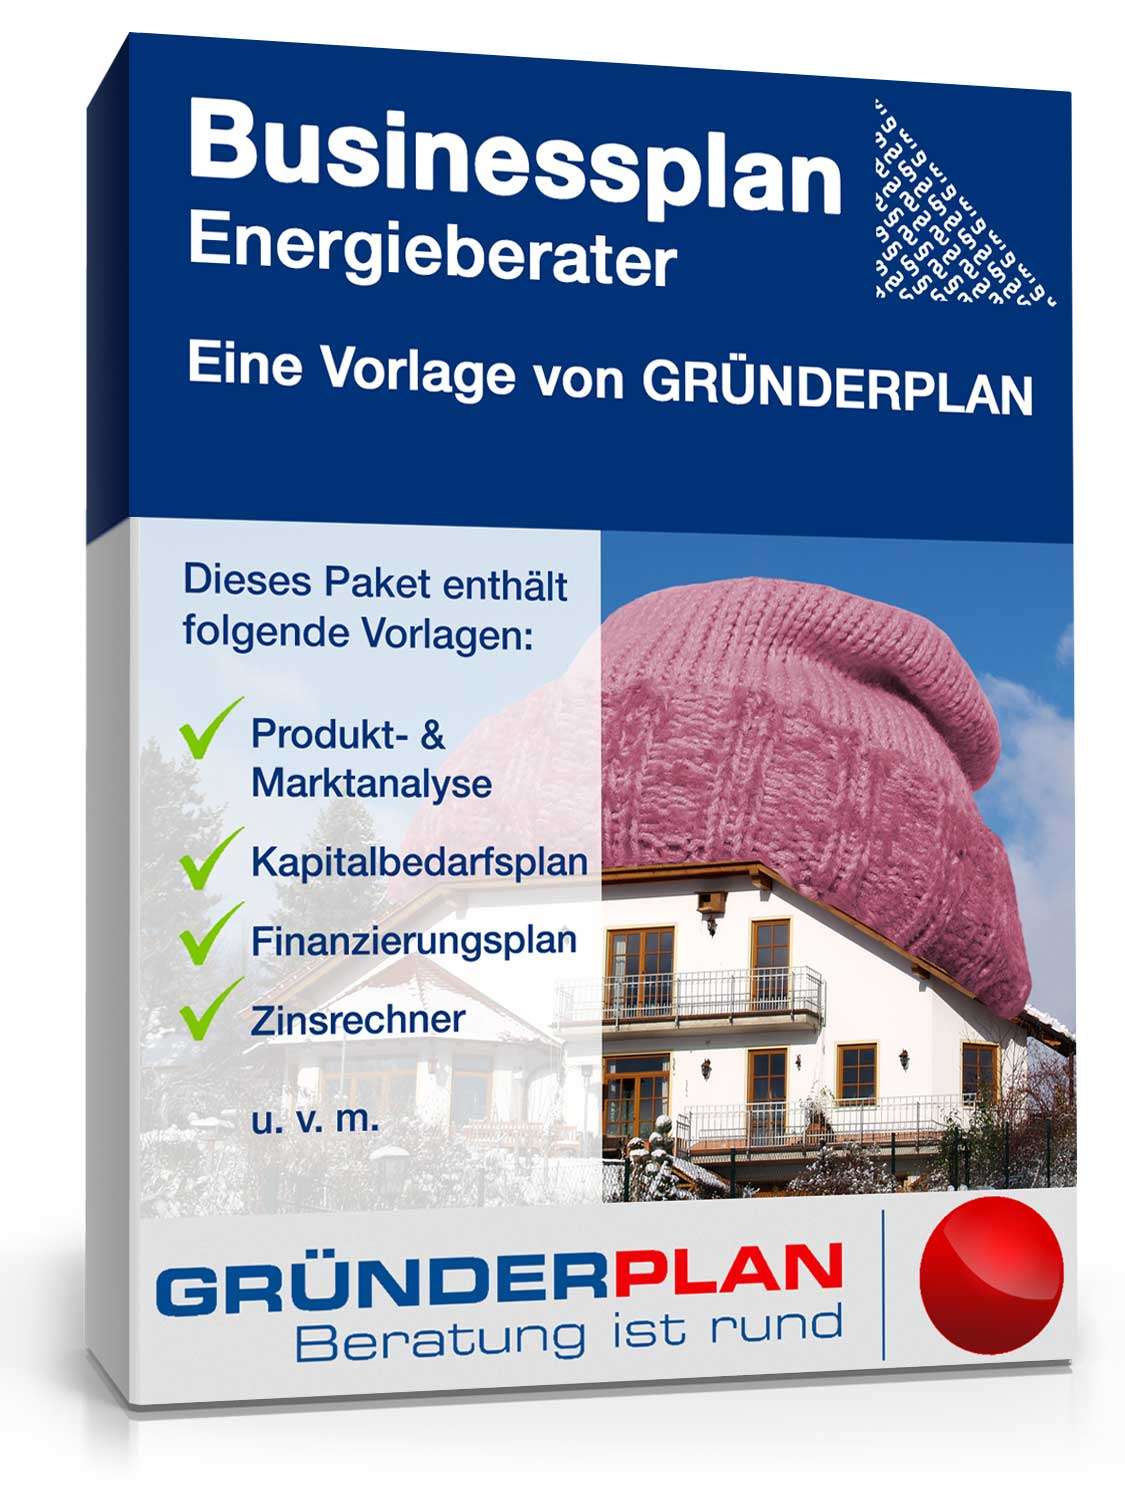 Hauptbild des Produkts: Businessplan Energieberater von Gründerplan